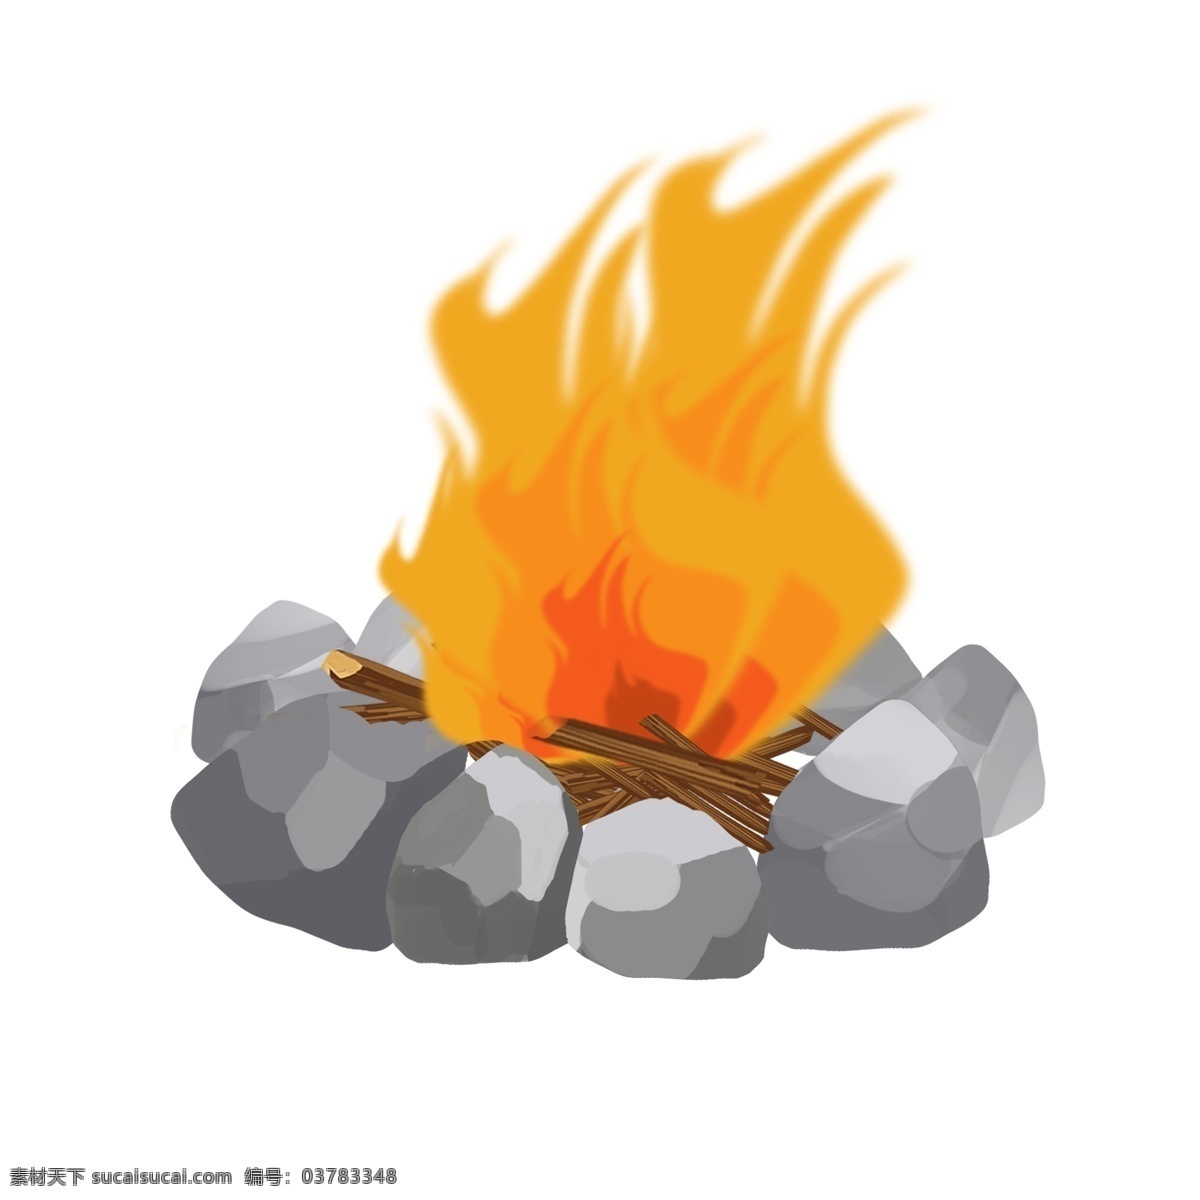 石头 柴火 堆 手绘 插画 手绘石头 干树枝 木头 火焰 灰色石头 卡通 挡风石头 木柴 柴火堆